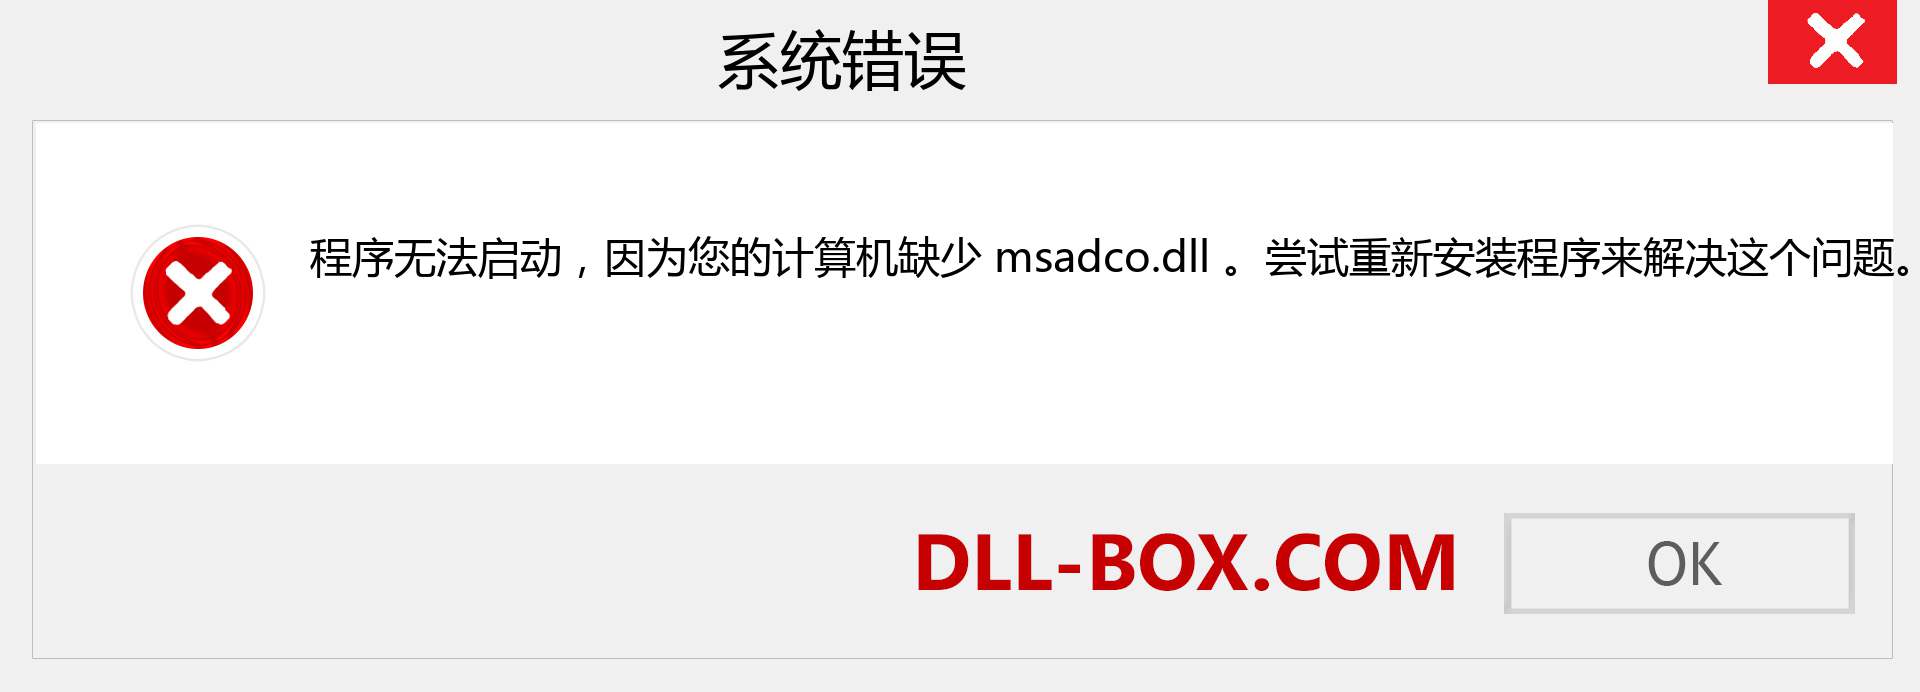 msadco.dll 文件丢失？。 适用于 Windows 7、8、10 的下载 - 修复 Windows、照片、图像上的 msadco dll 丢失错误